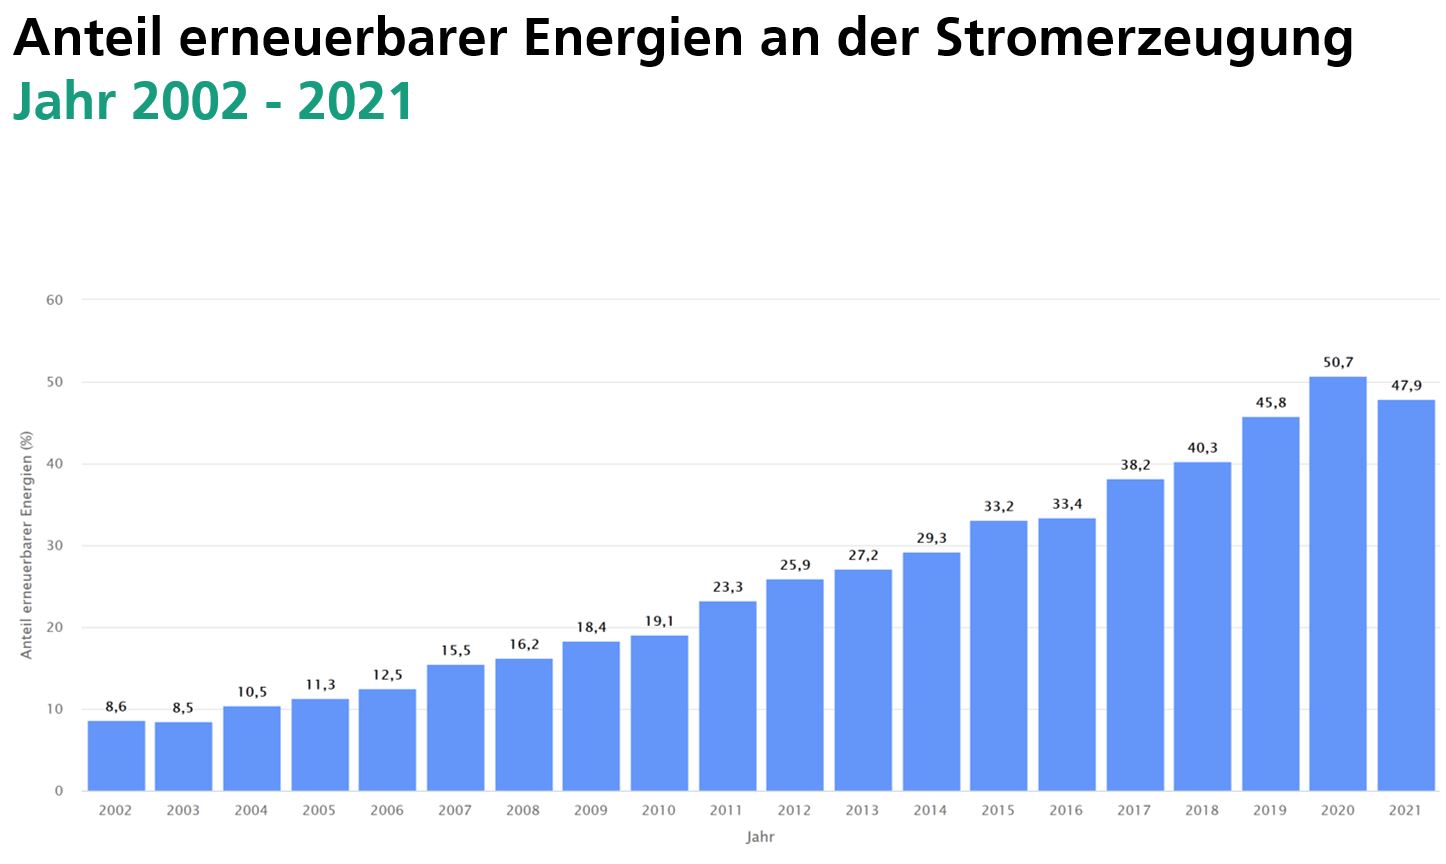 Anteile erneuerbarer Energien an der Nettostromerzeugung zur öffentlichen Stromversorgung von 2002 bis 2020